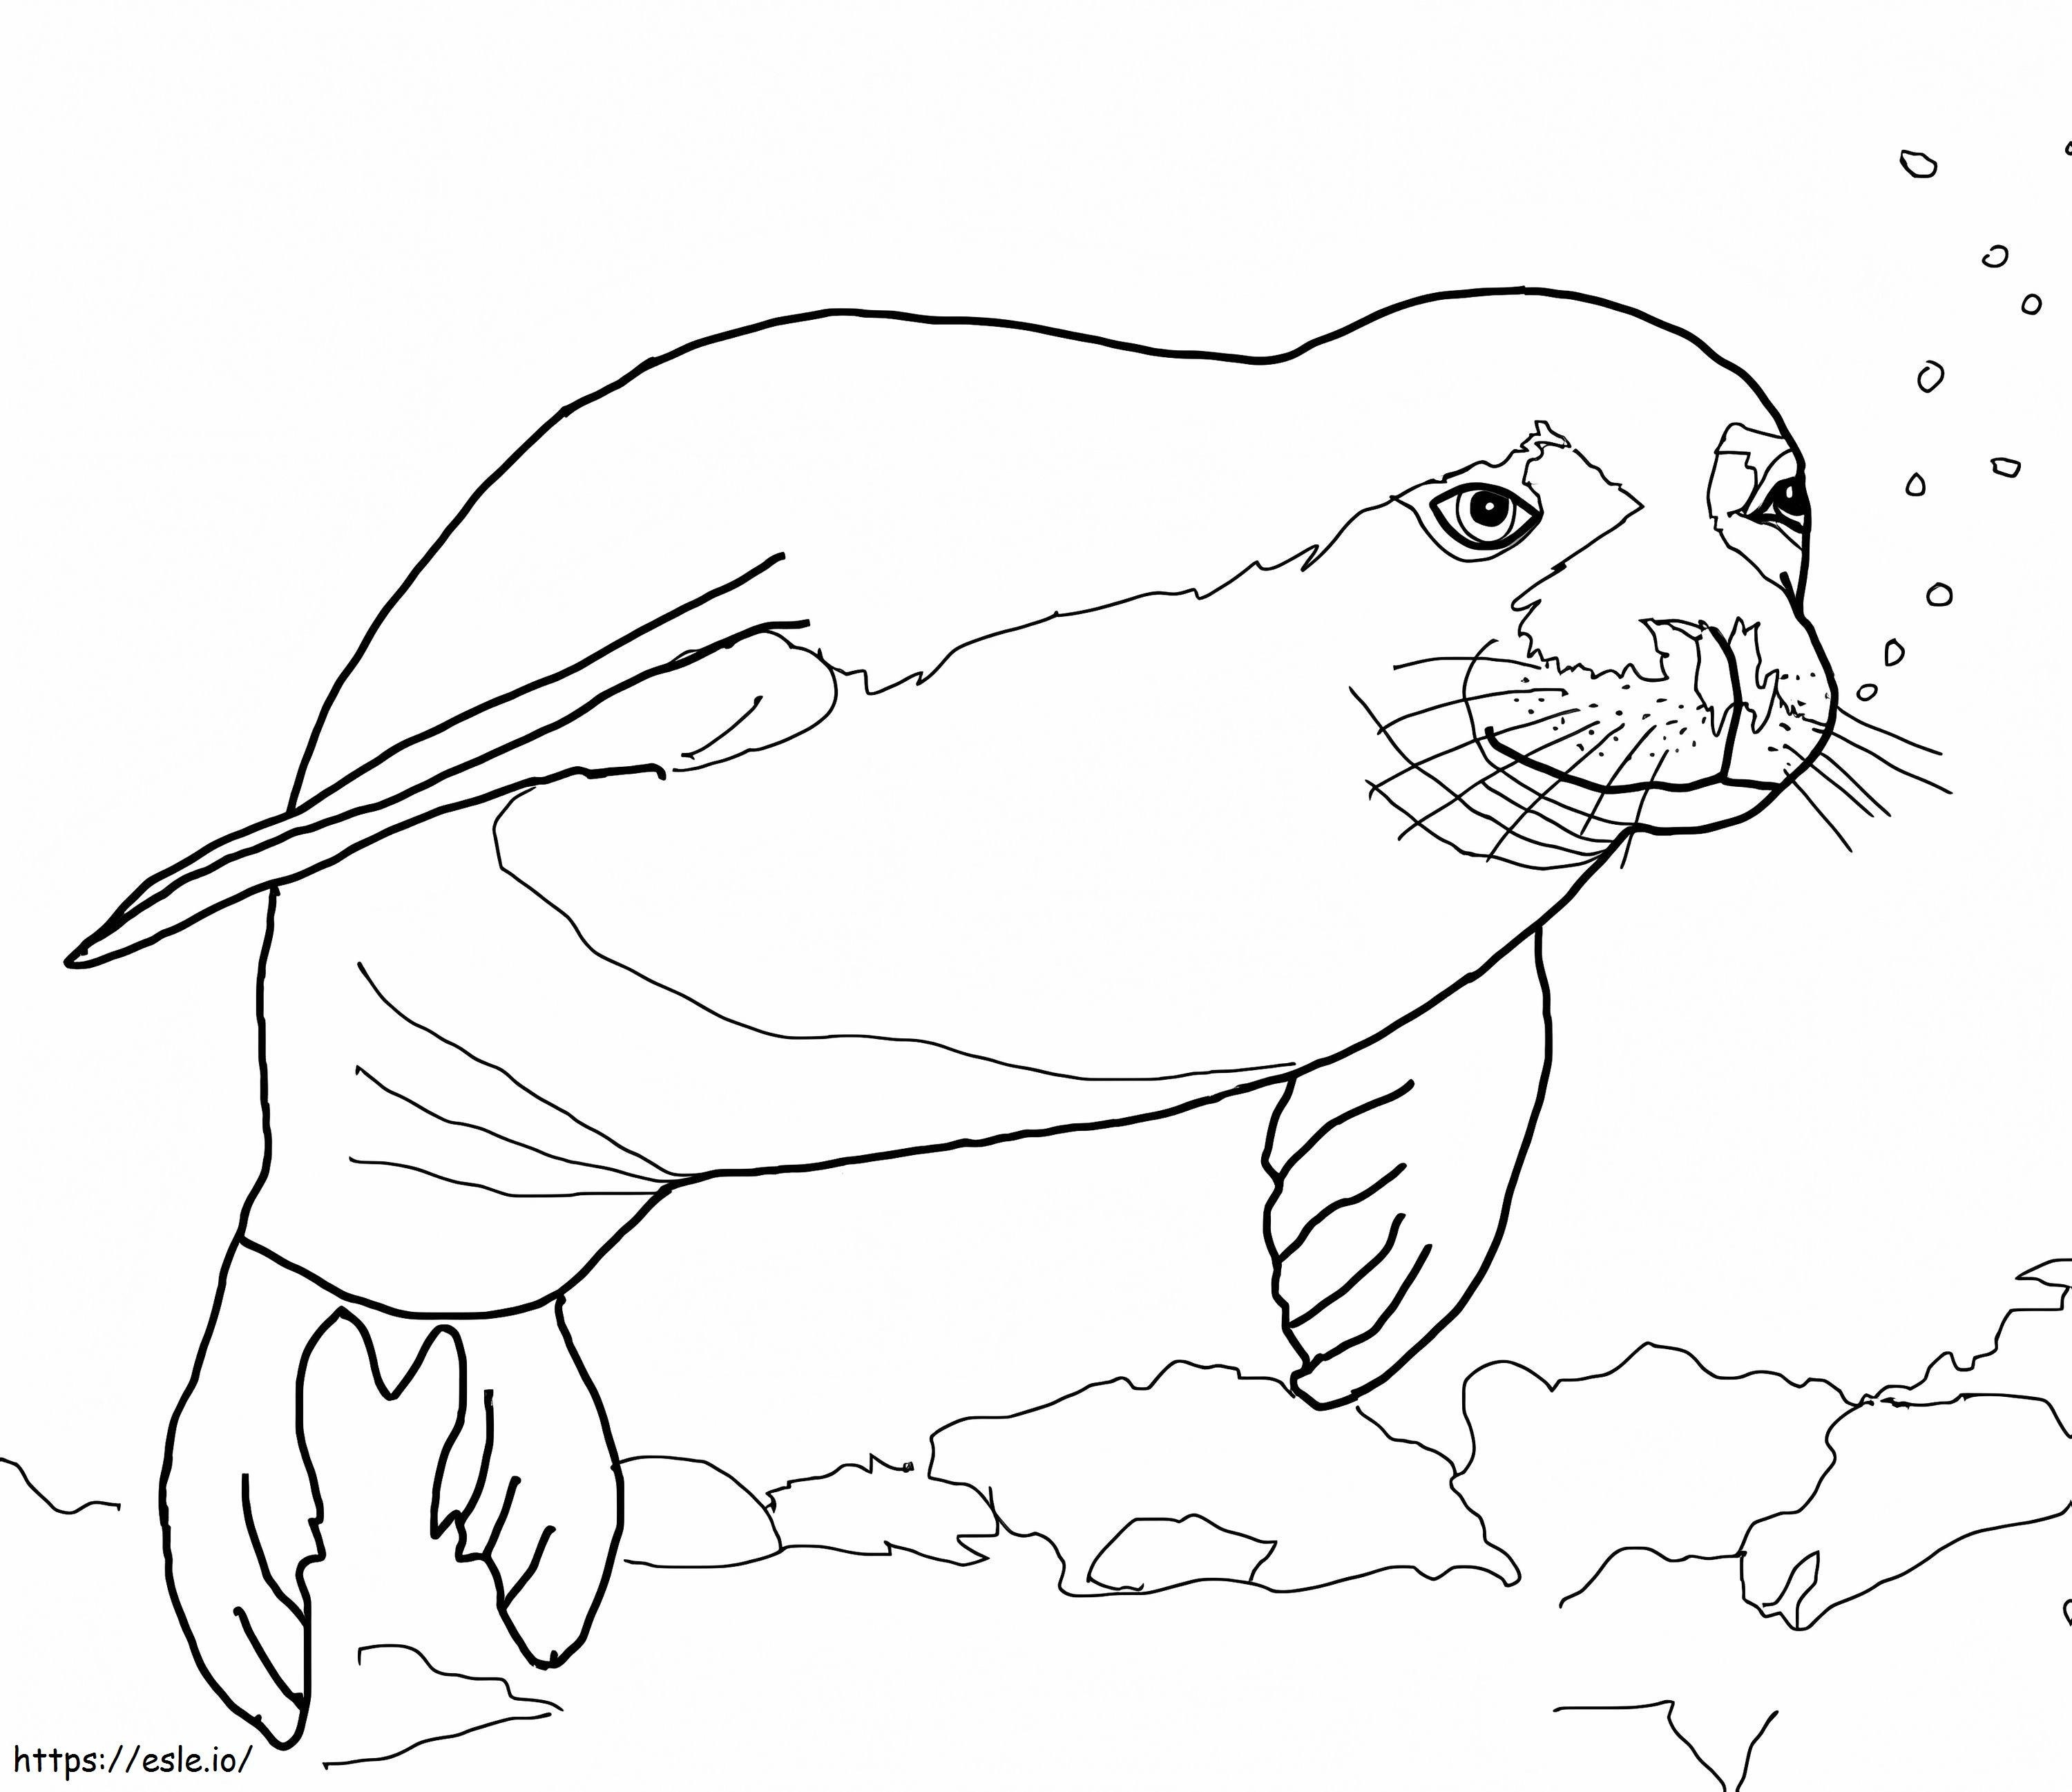 Hawaiian Monk Seal coloring page